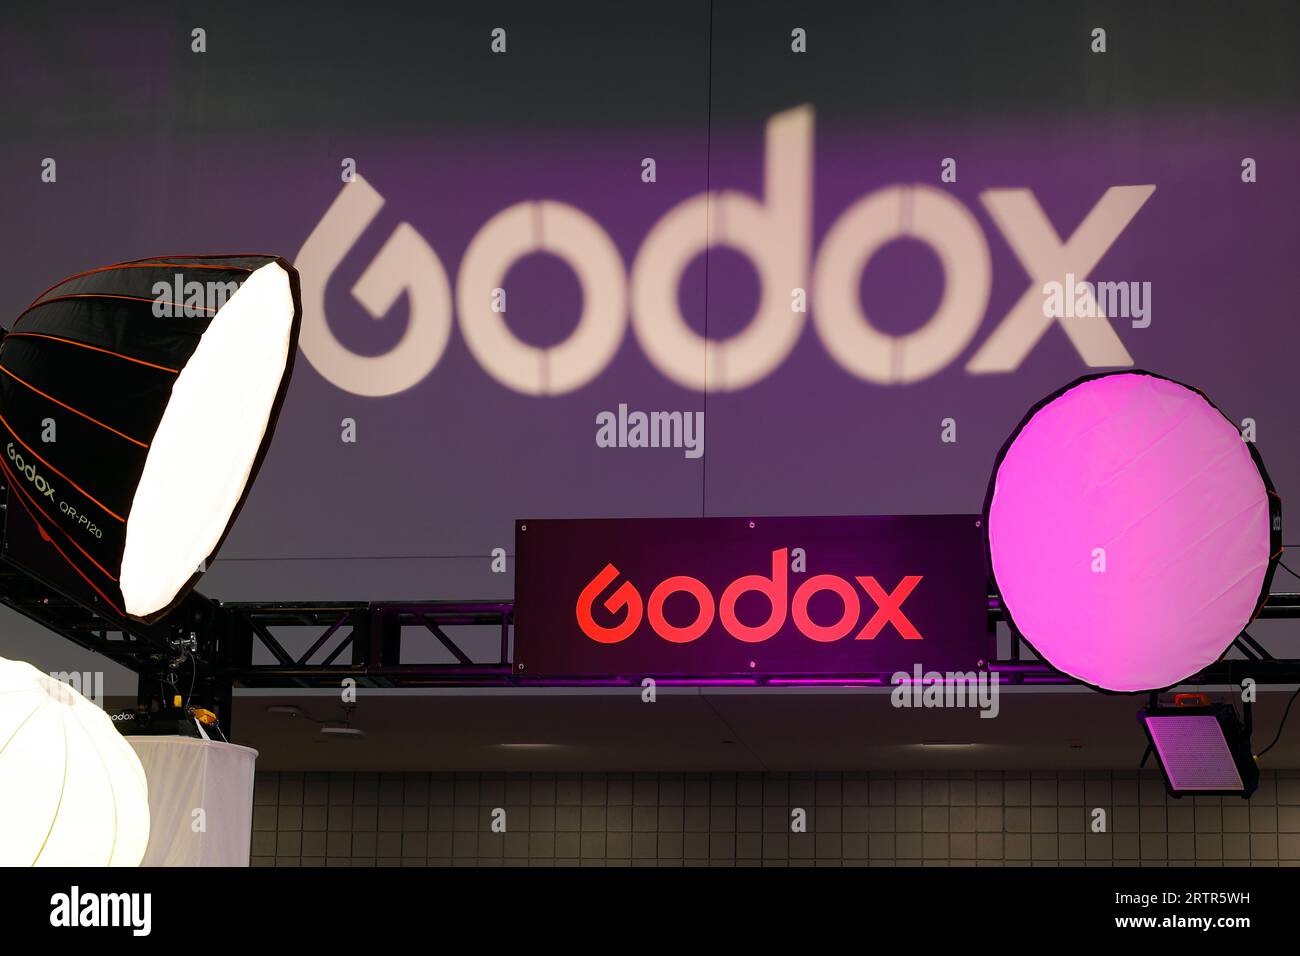 Cartellonistica per l'illuminazione dello studio fotografico Godox in una fiera. Foto Stock